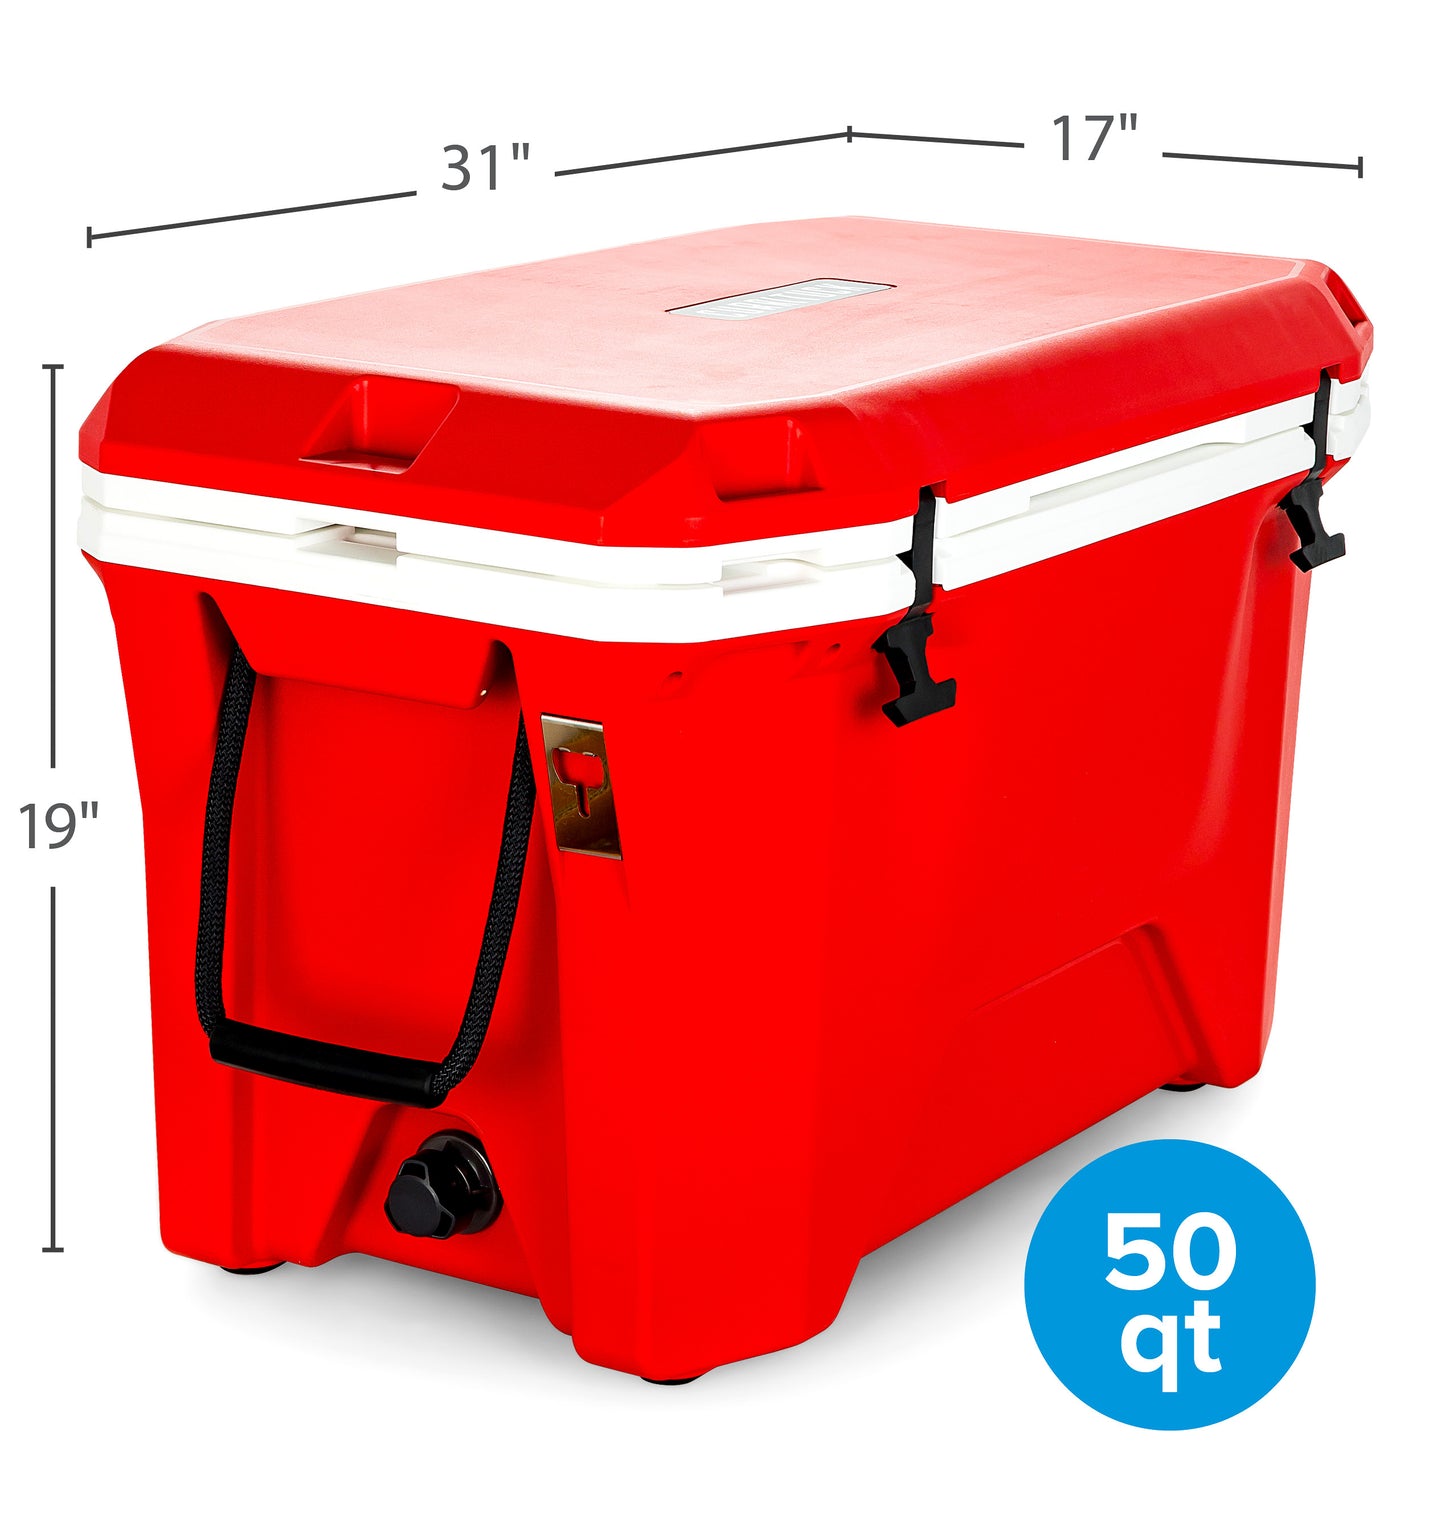 Currituck 30 and 50 Quart Premium Coolers - Red & White